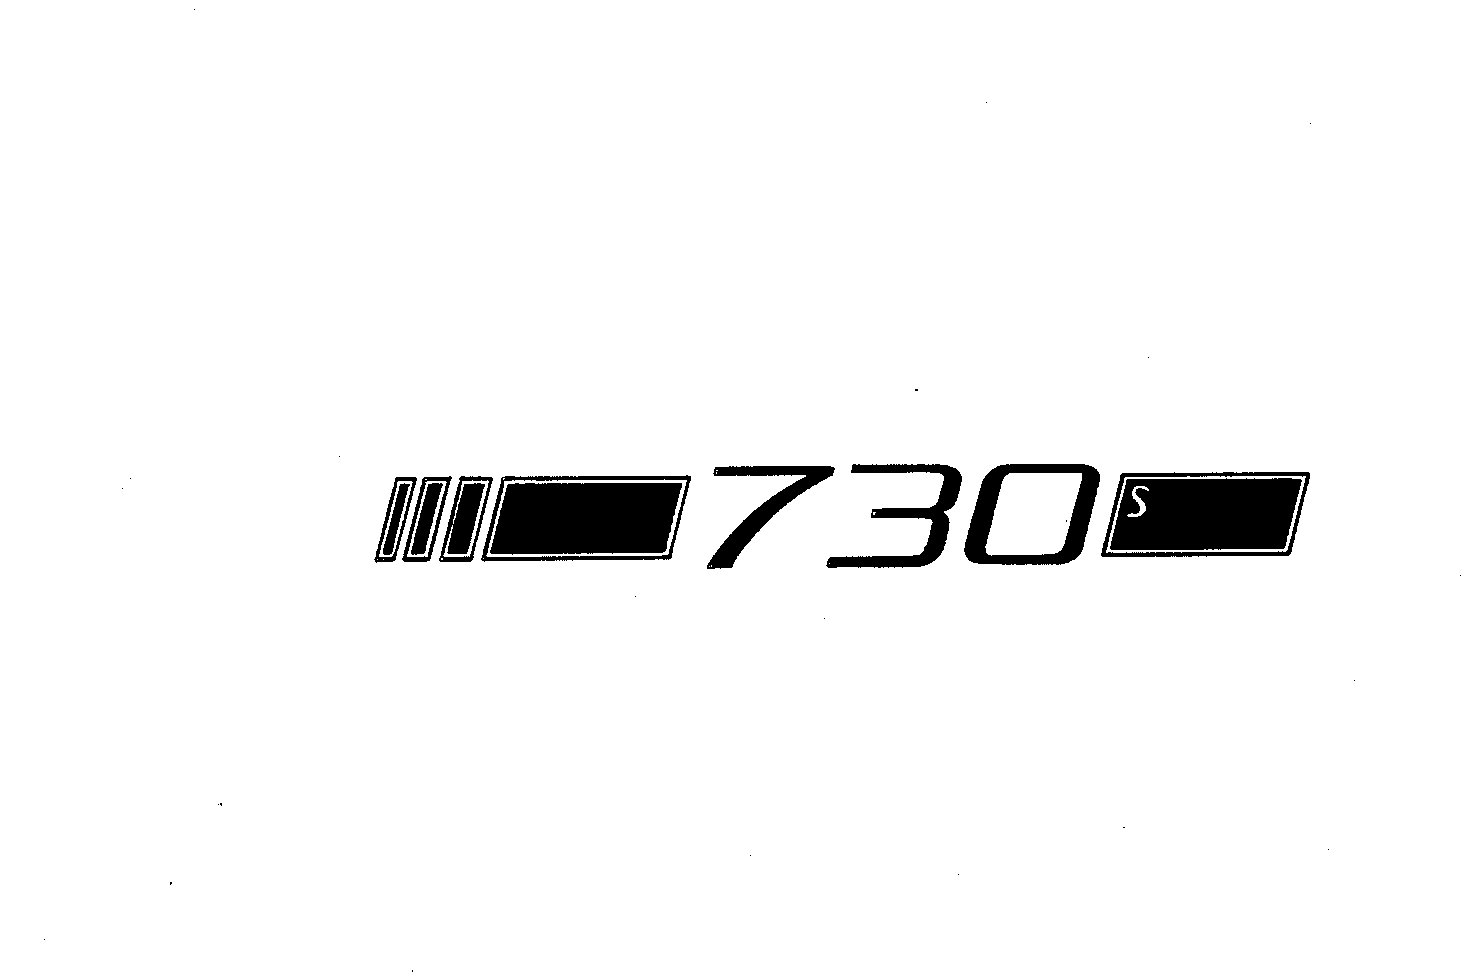  730S